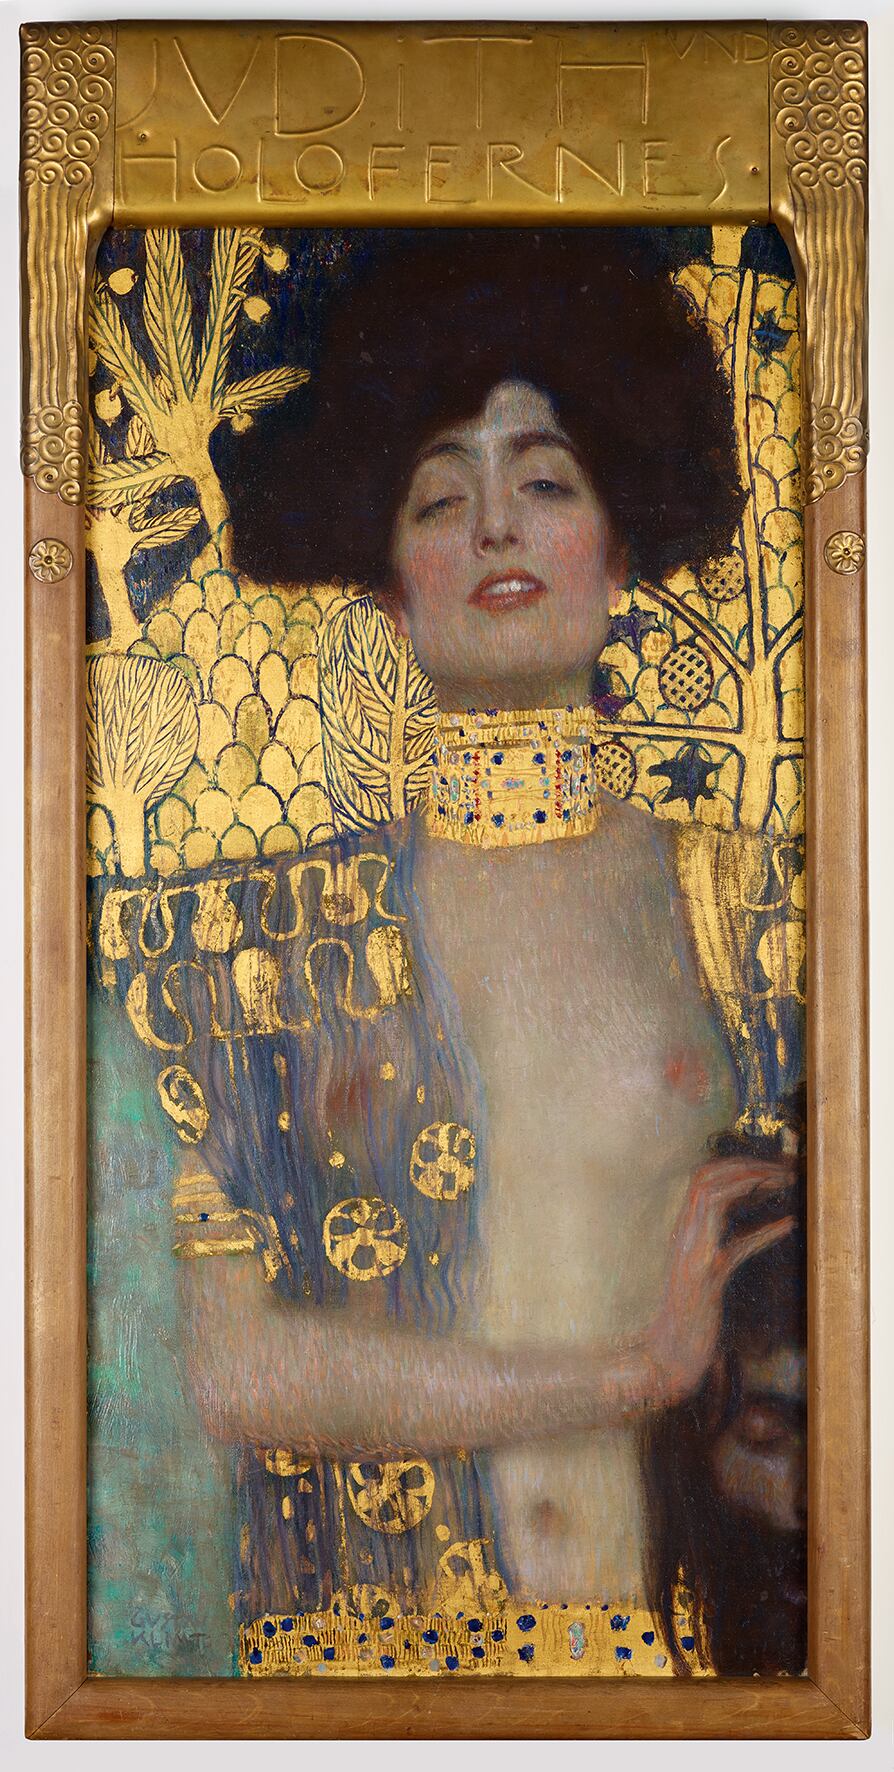 El cuadro 'Judith', que Klimt pintó en 1901.